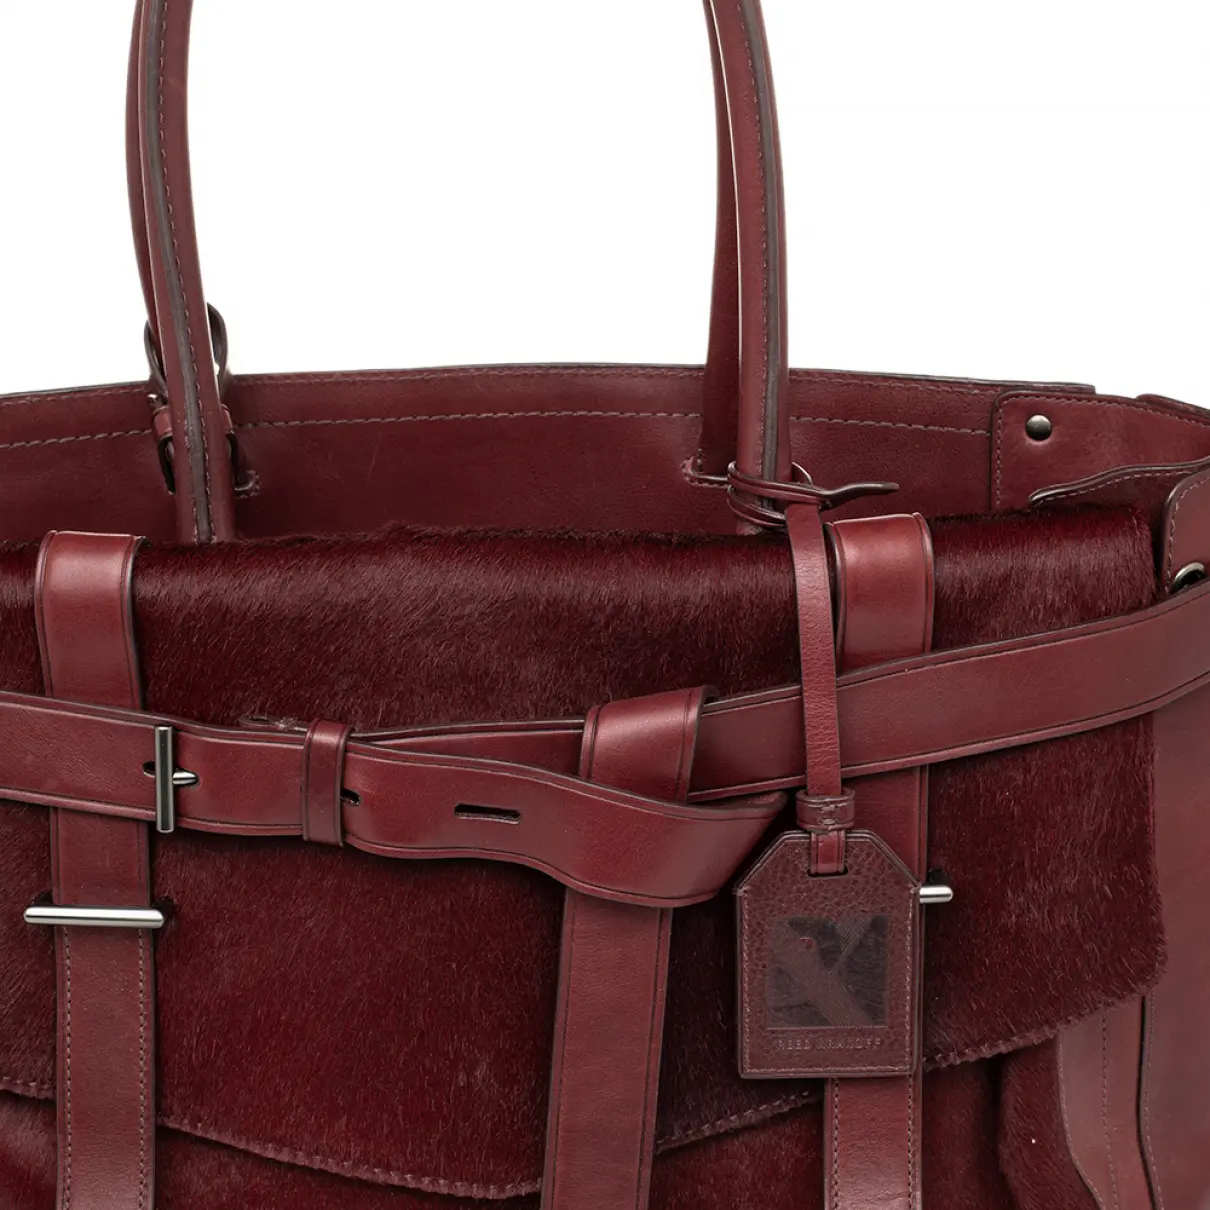 Leather handbag Reed Krakoff